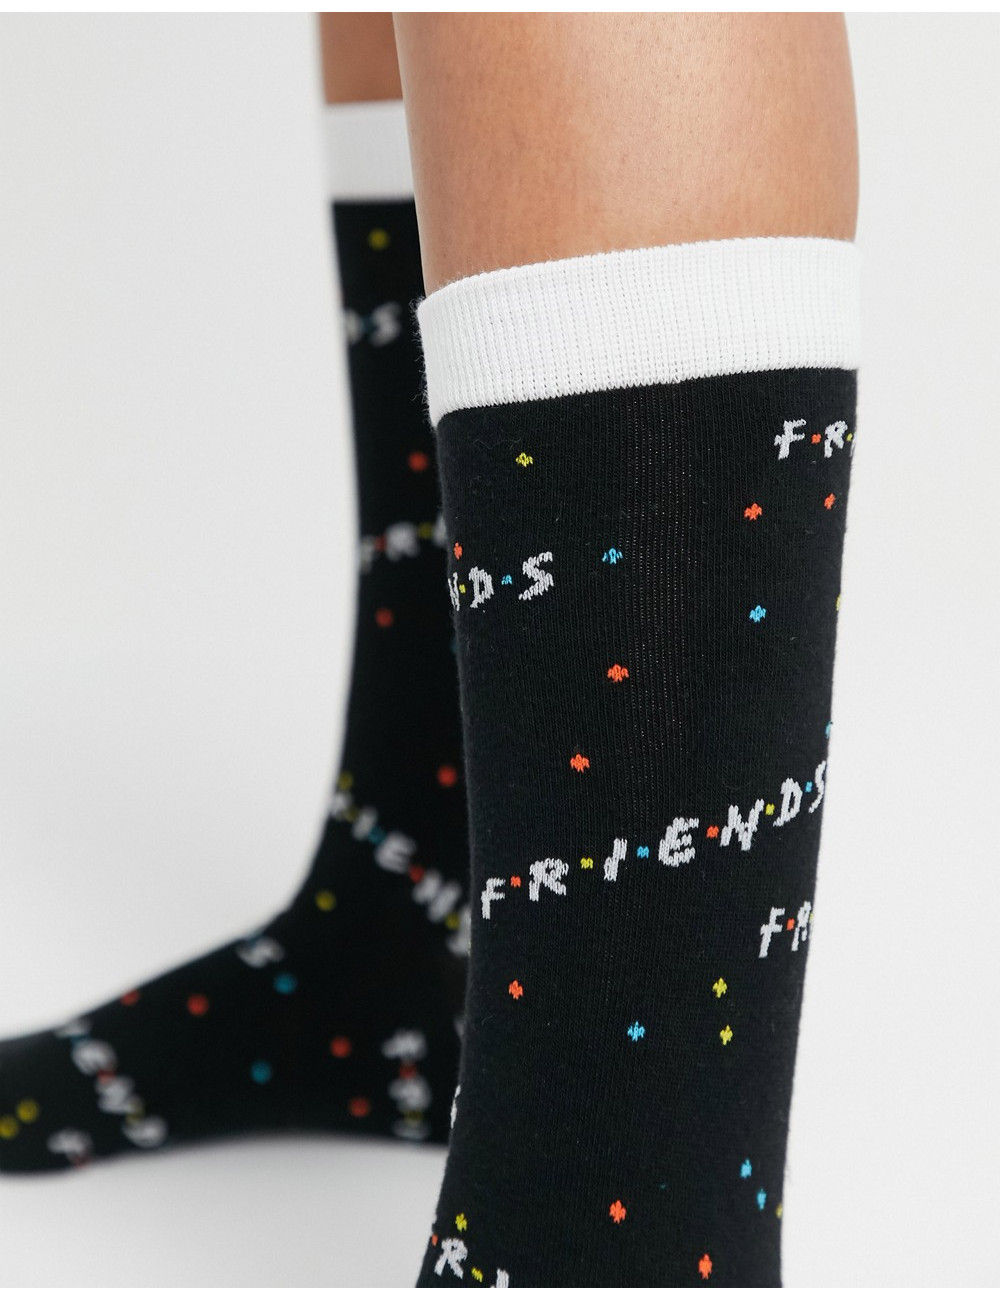 Typo x Friends socks with logo